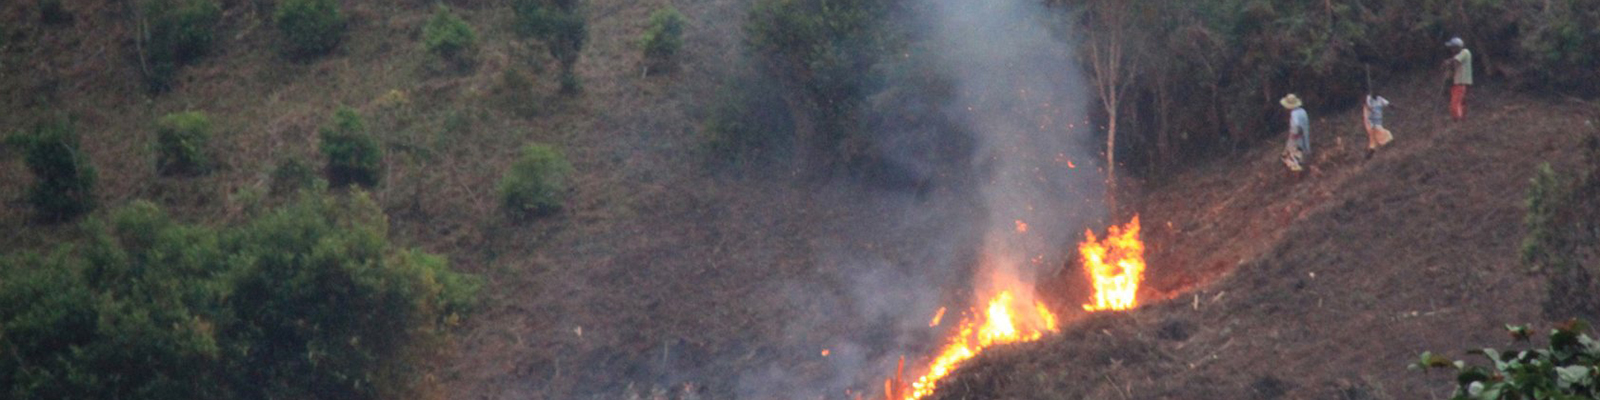 Bauern brennen Wald ab, um Landwirtschaftsflächen zu gewinnen